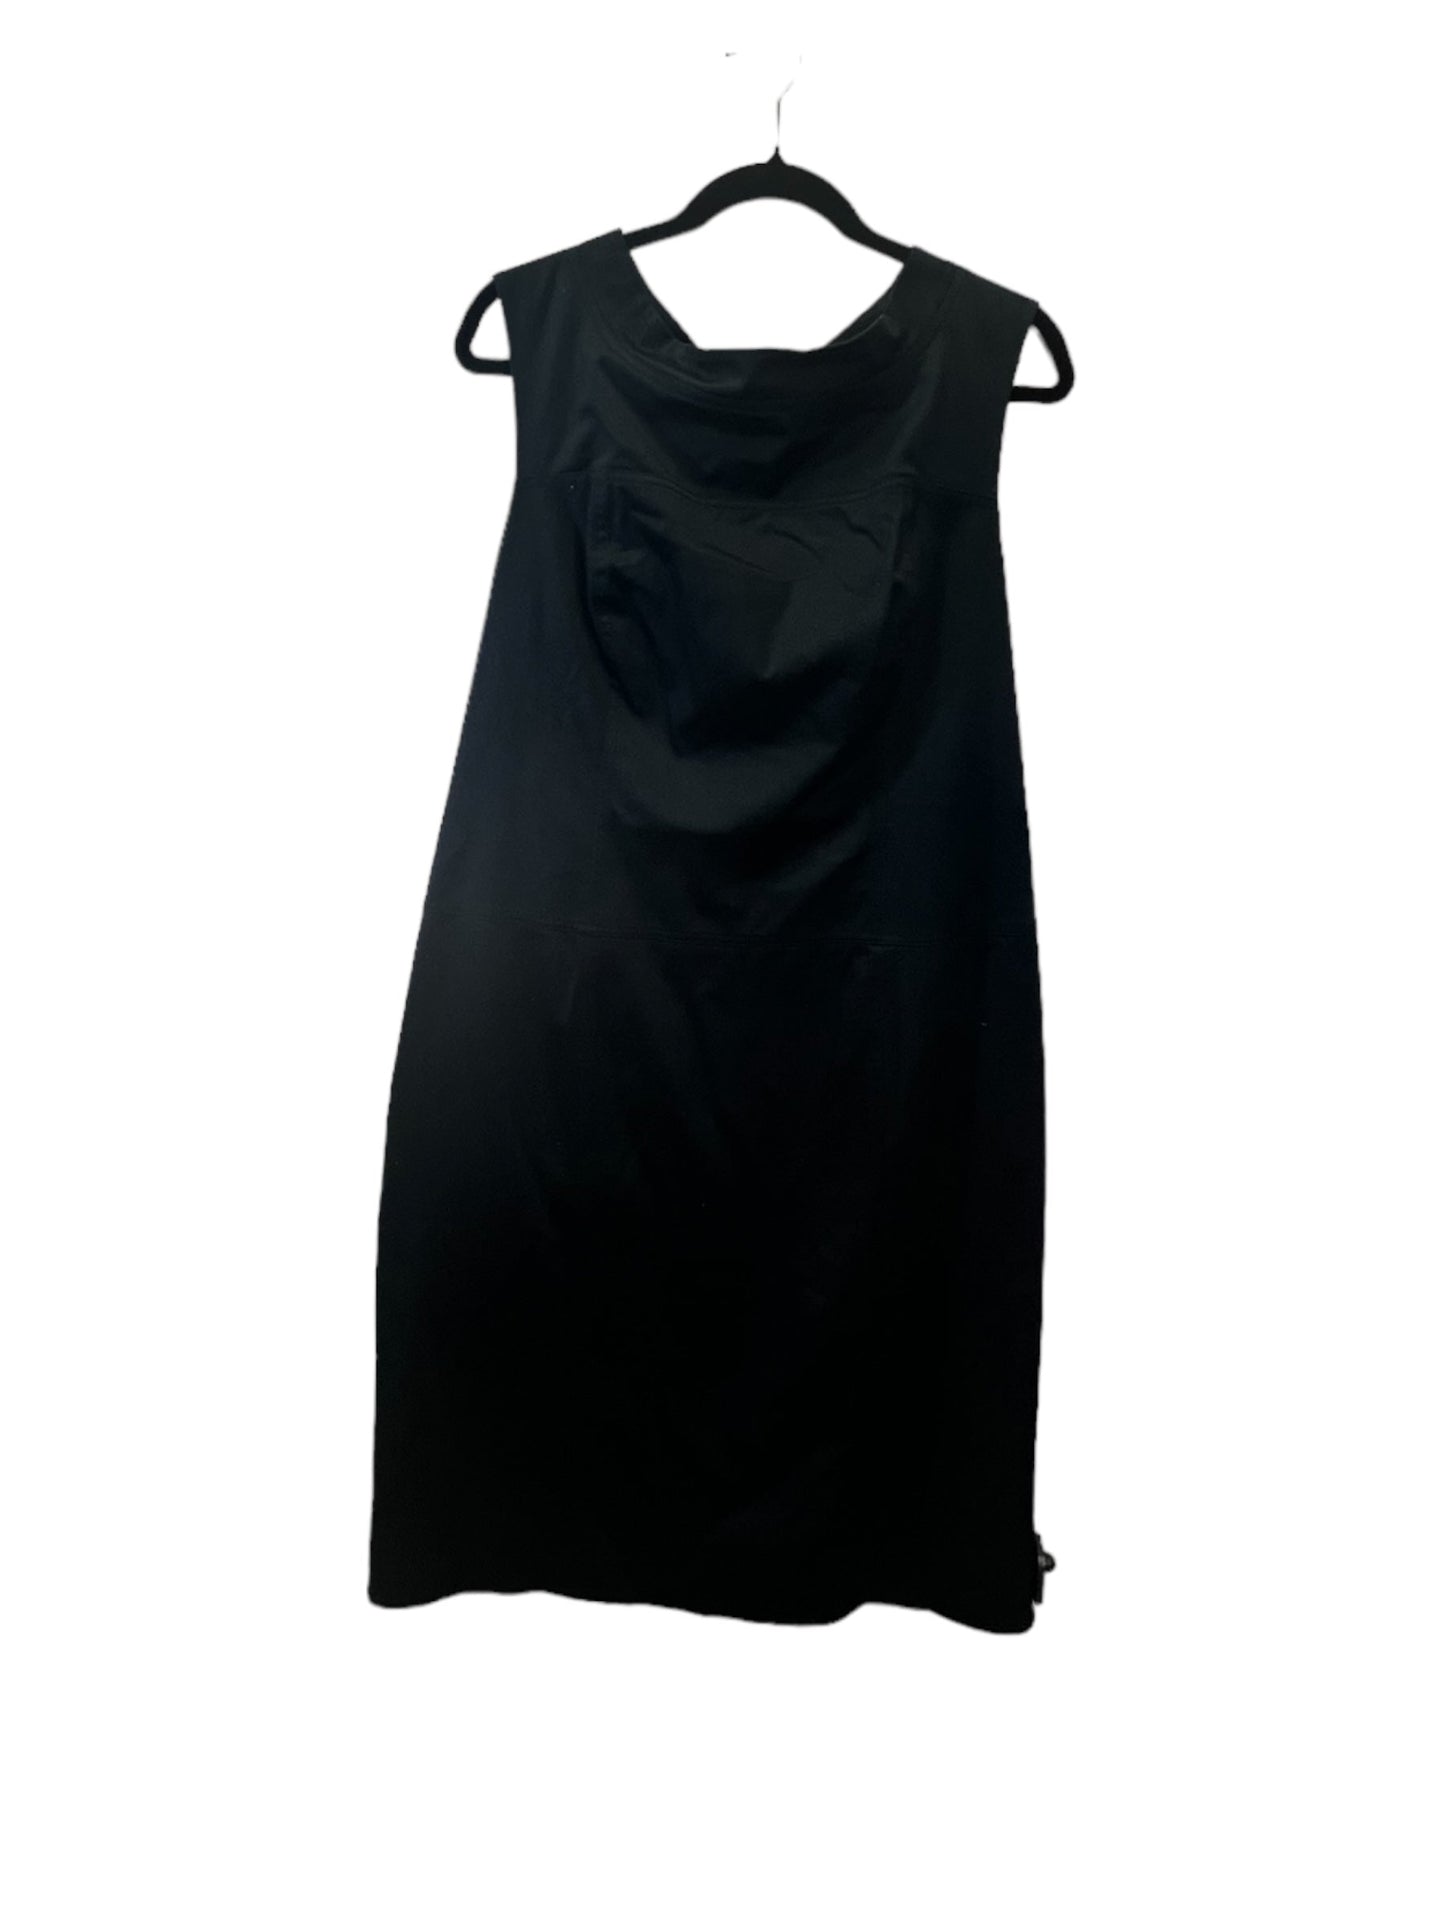 Black Dress Designer Cmb, Size 16